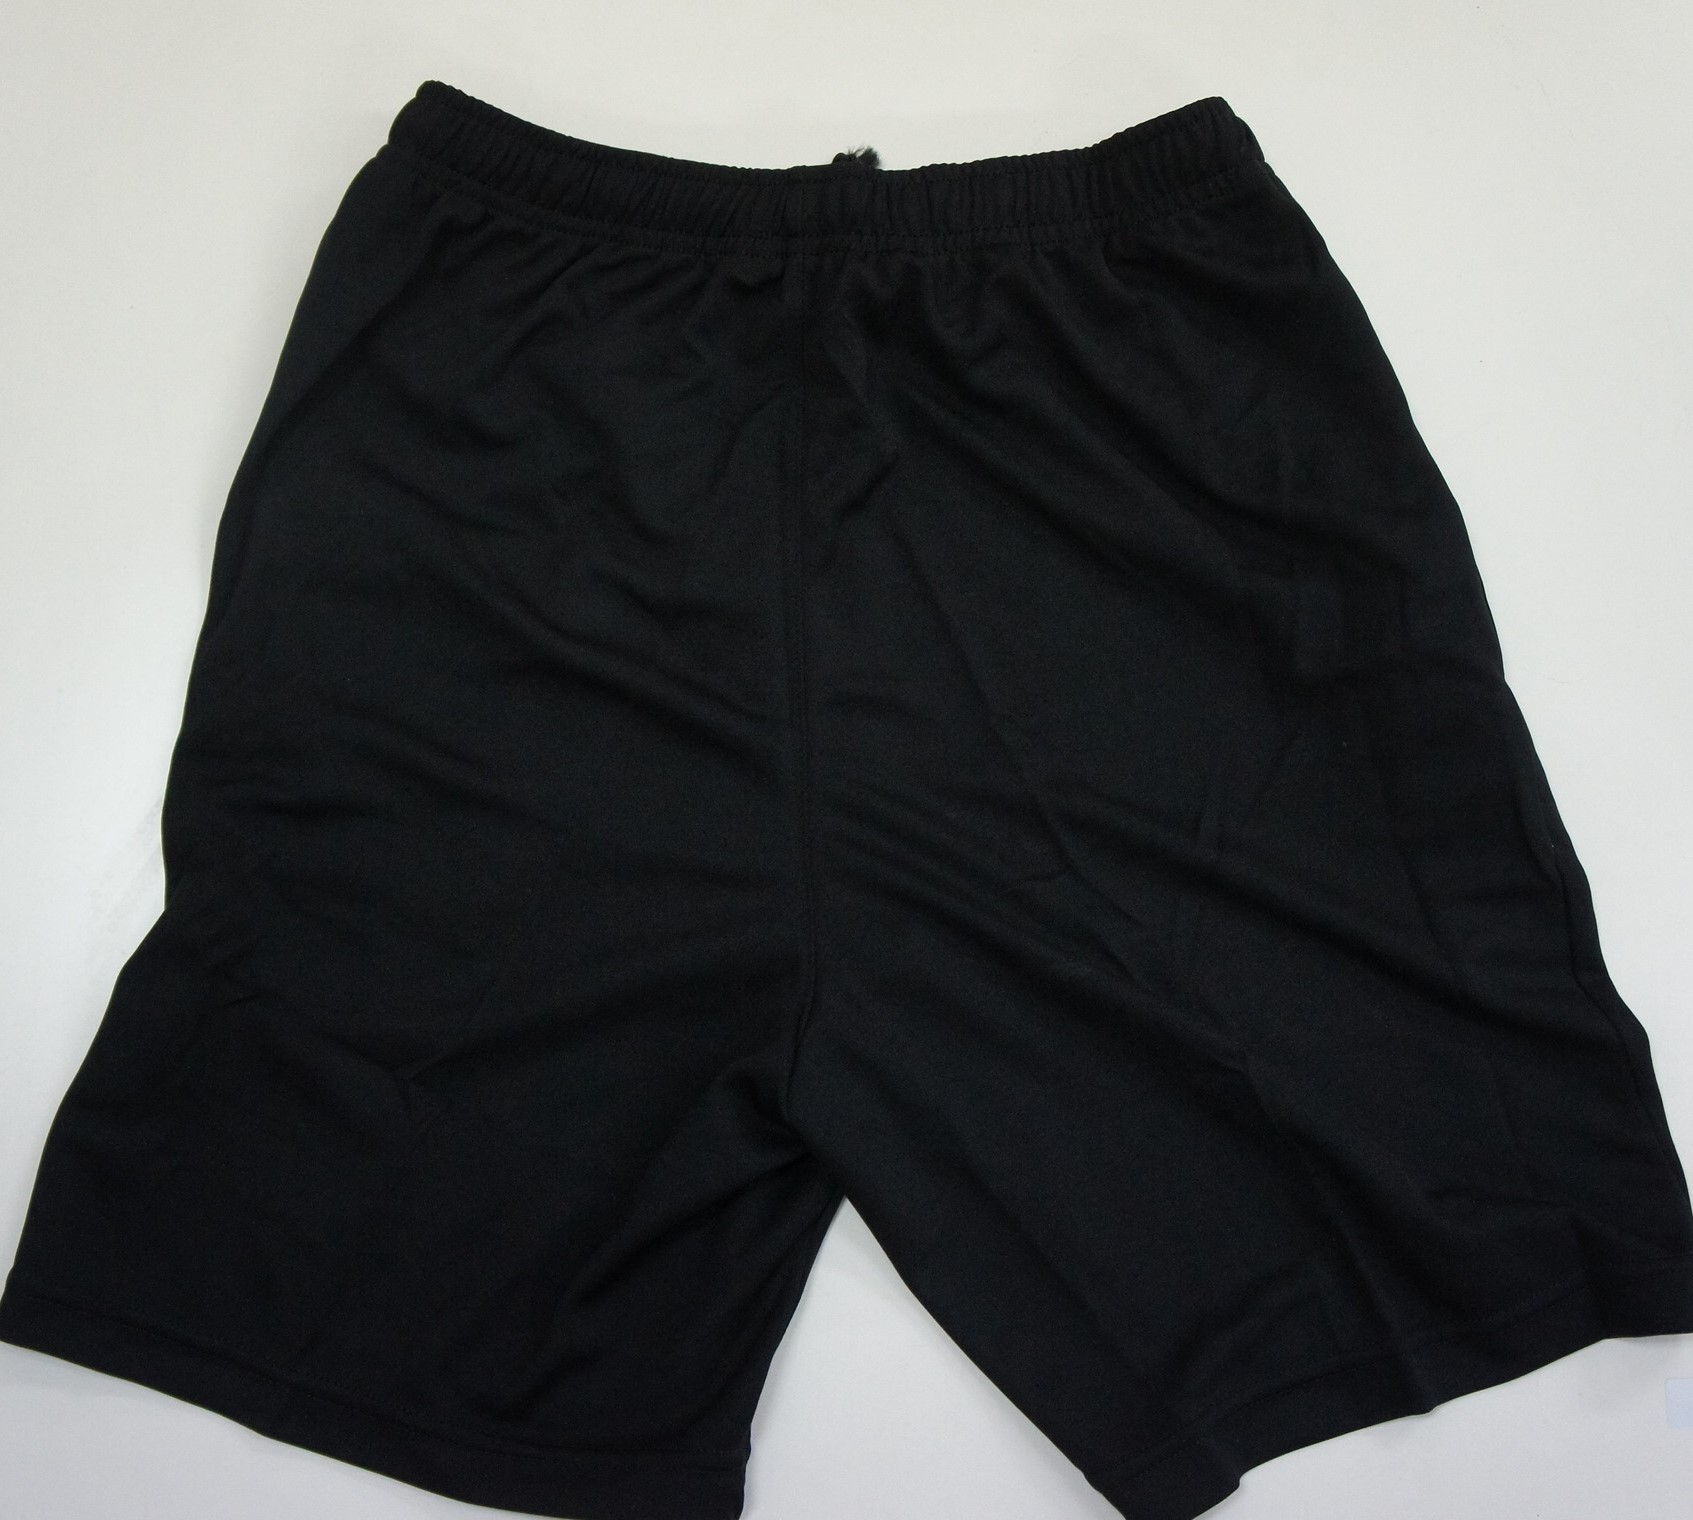 Yonex Mens Shorts 12019TR-007 Black, Made in Taiwan, Calibre Sports ...